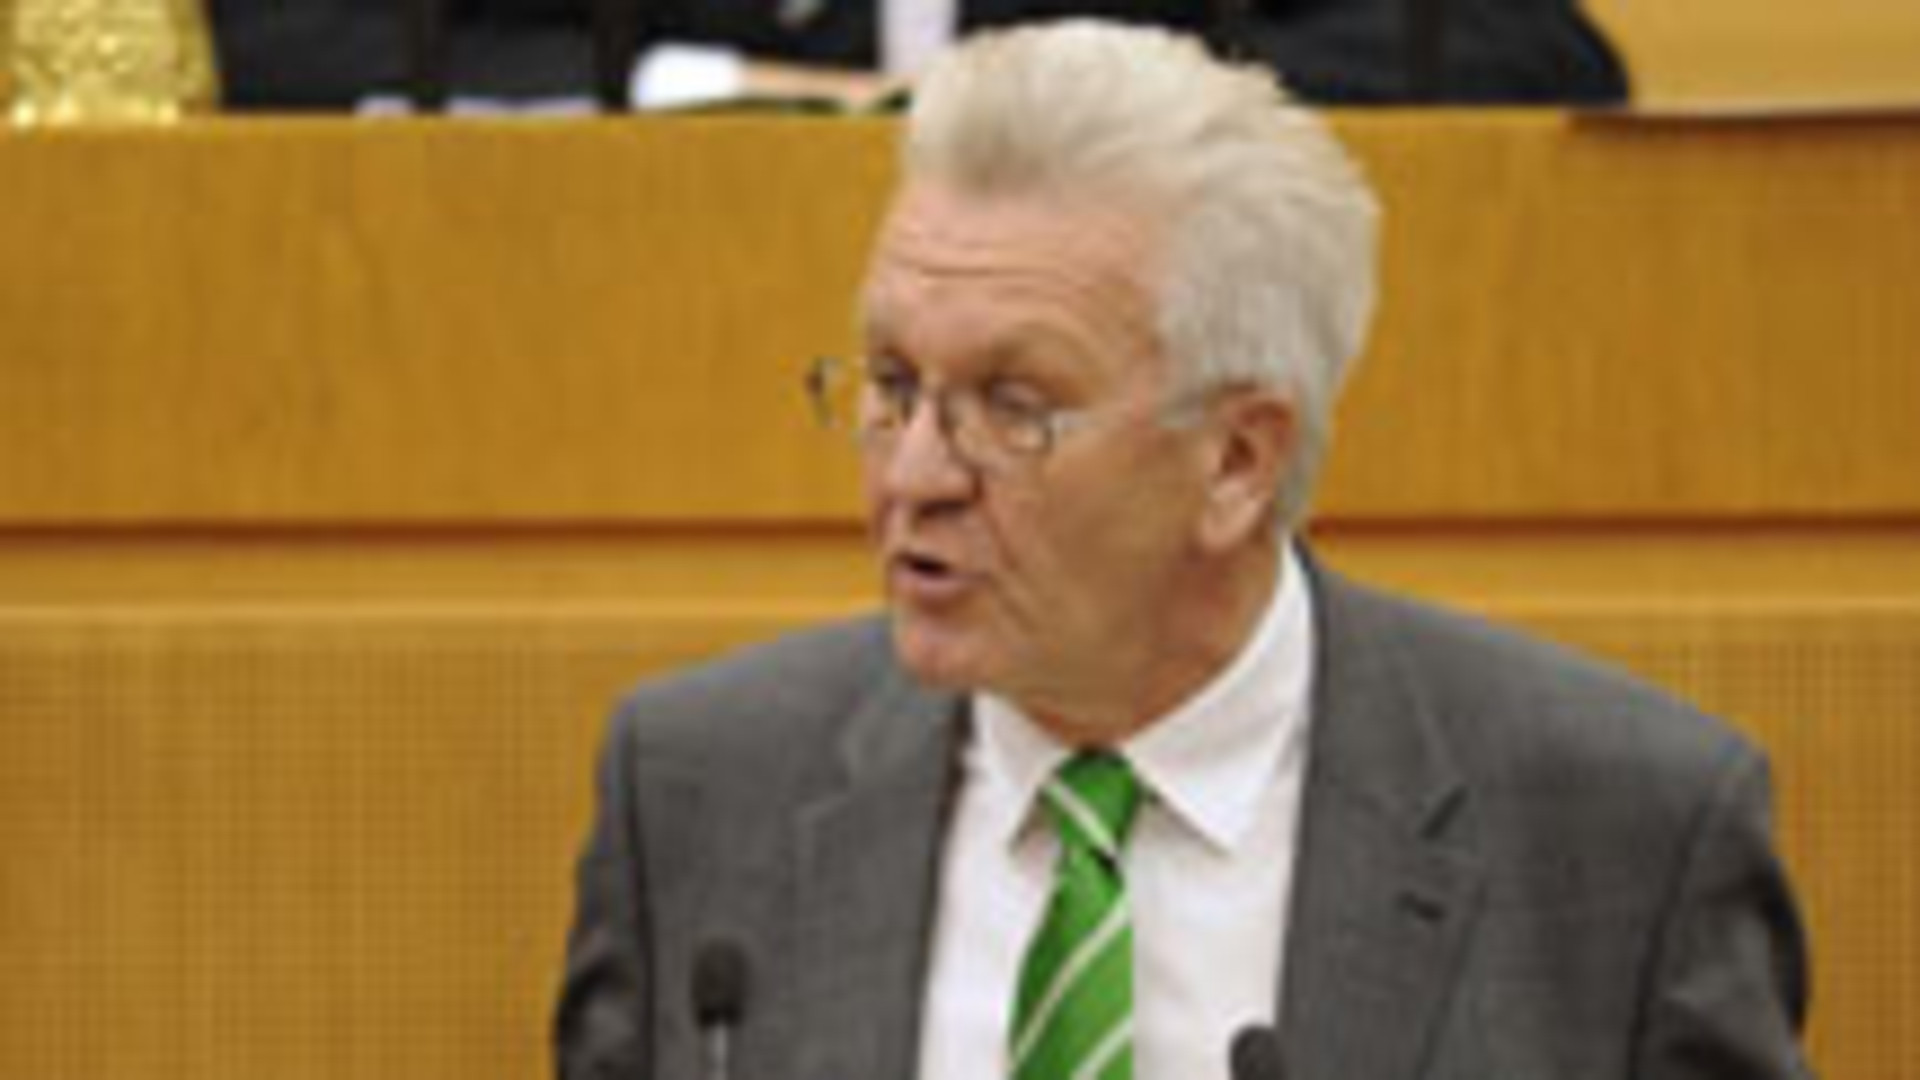 Ministerpräsident Winfried Kretschmann am Rednerpult im Landtag während einer Debatte (Bild: LMZ BW).